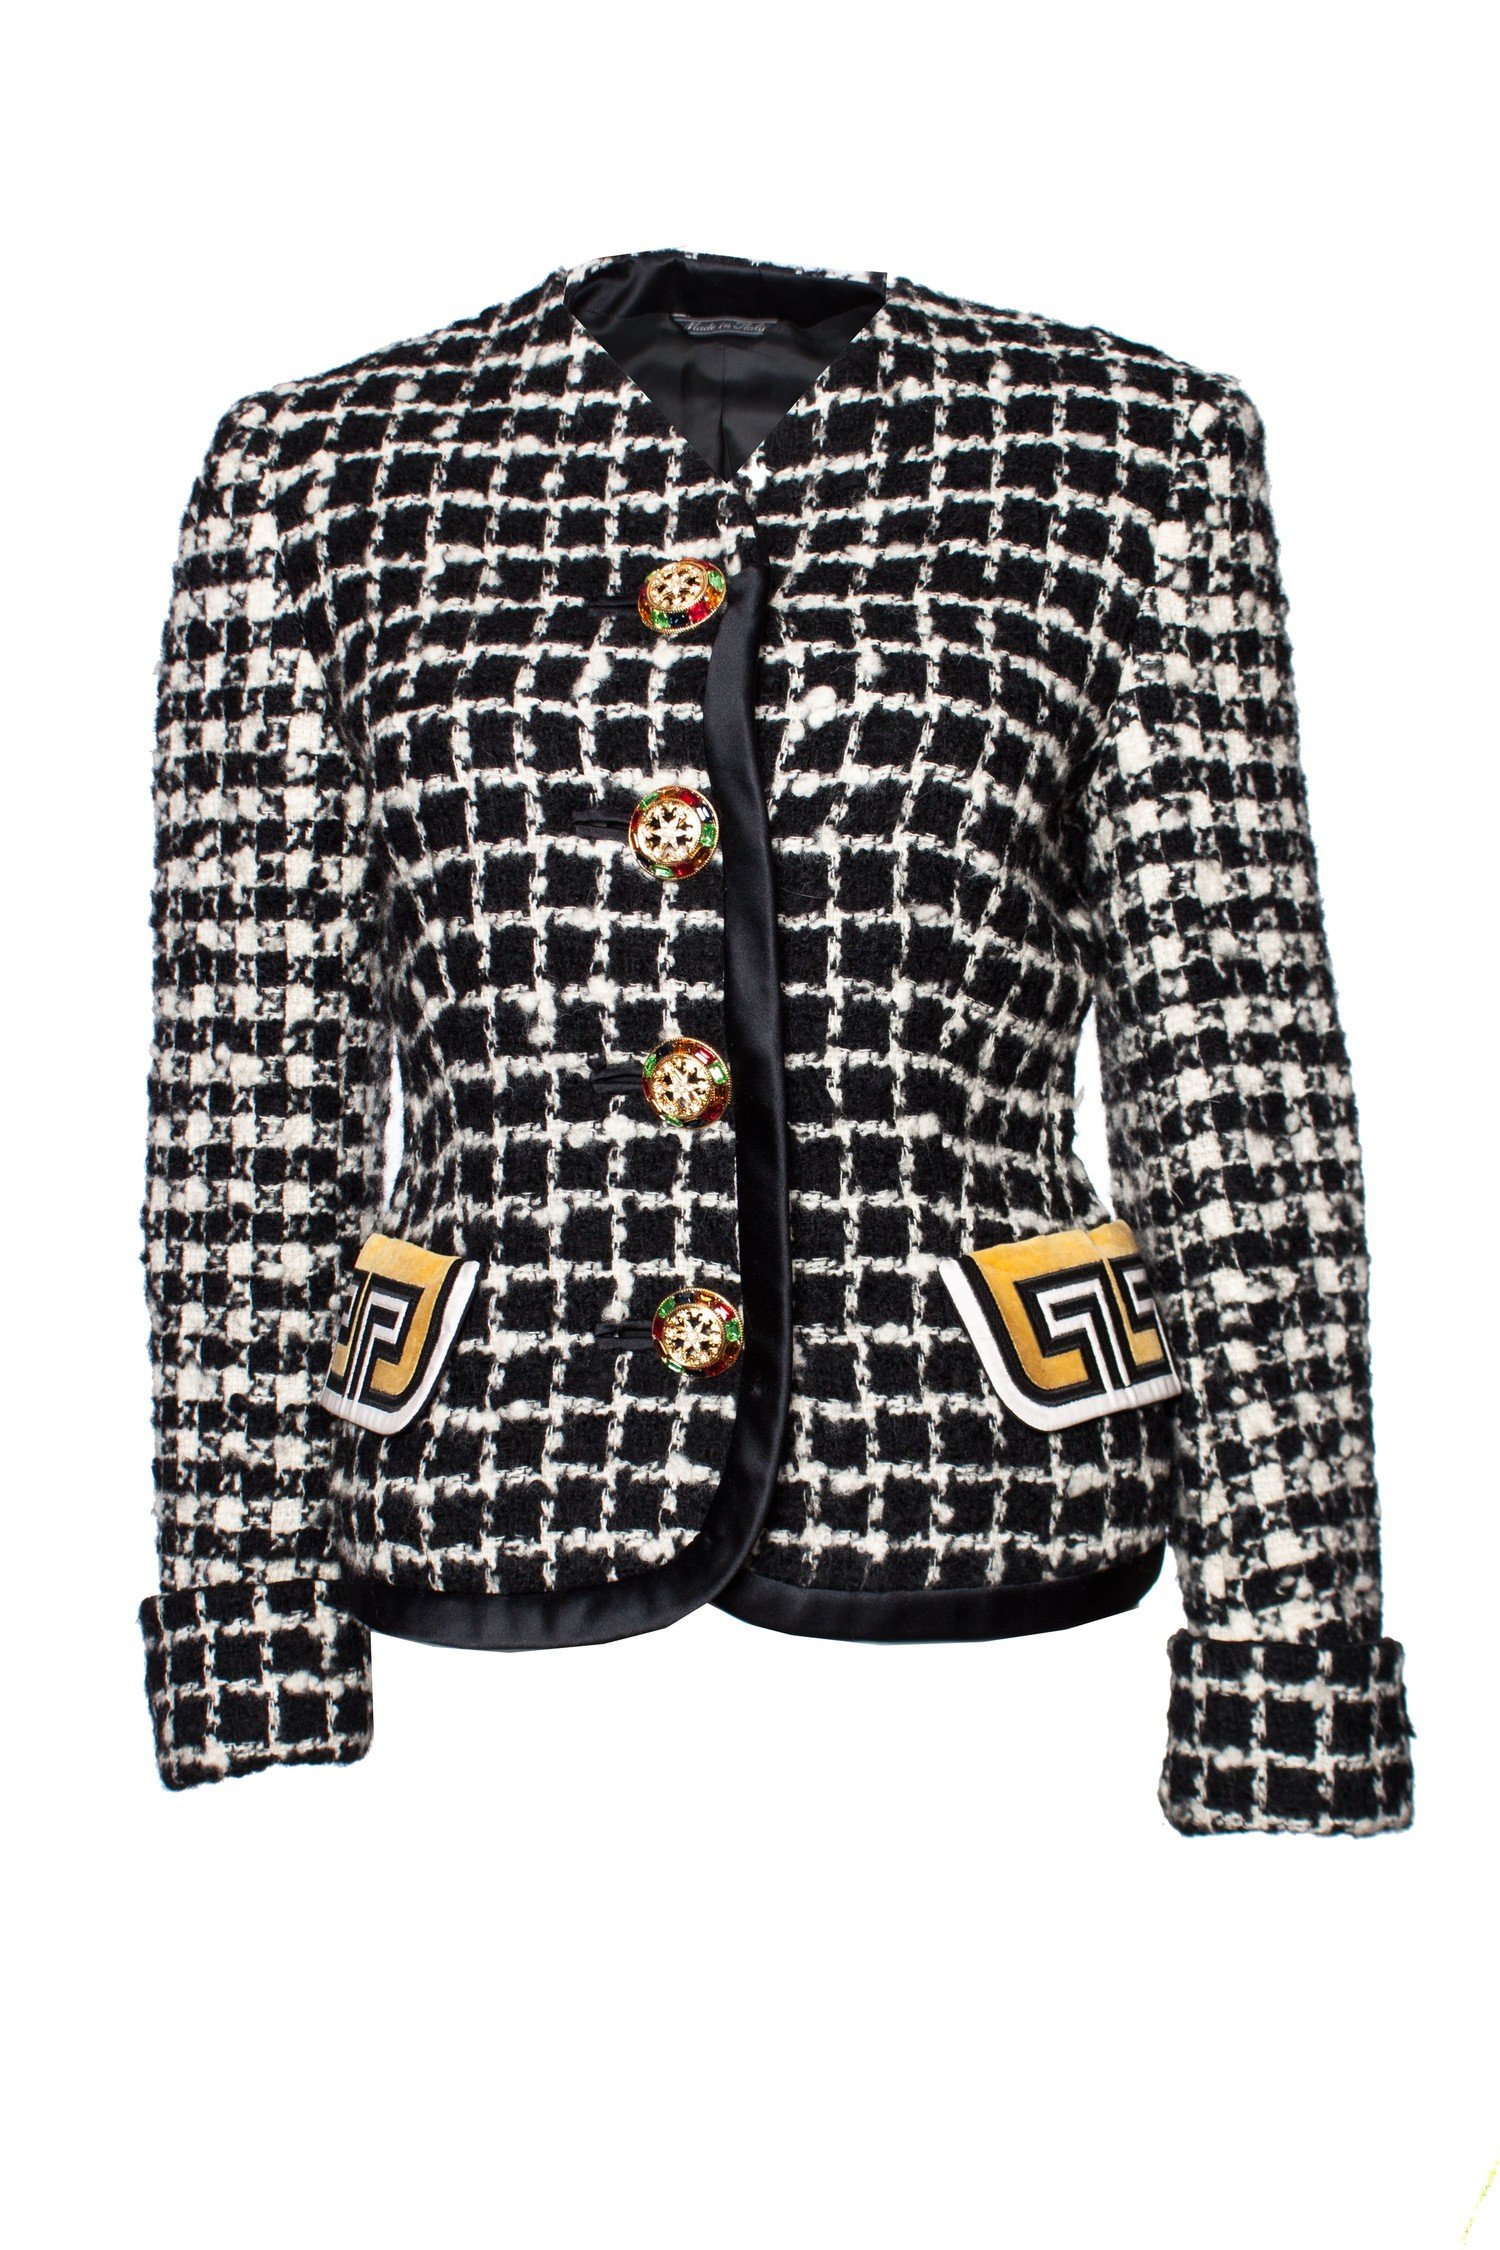 Verdeel doorgaan magnifiek Gianni Versace Couture, zwart-wit bouclé jasje. - Unique Designer Pieces